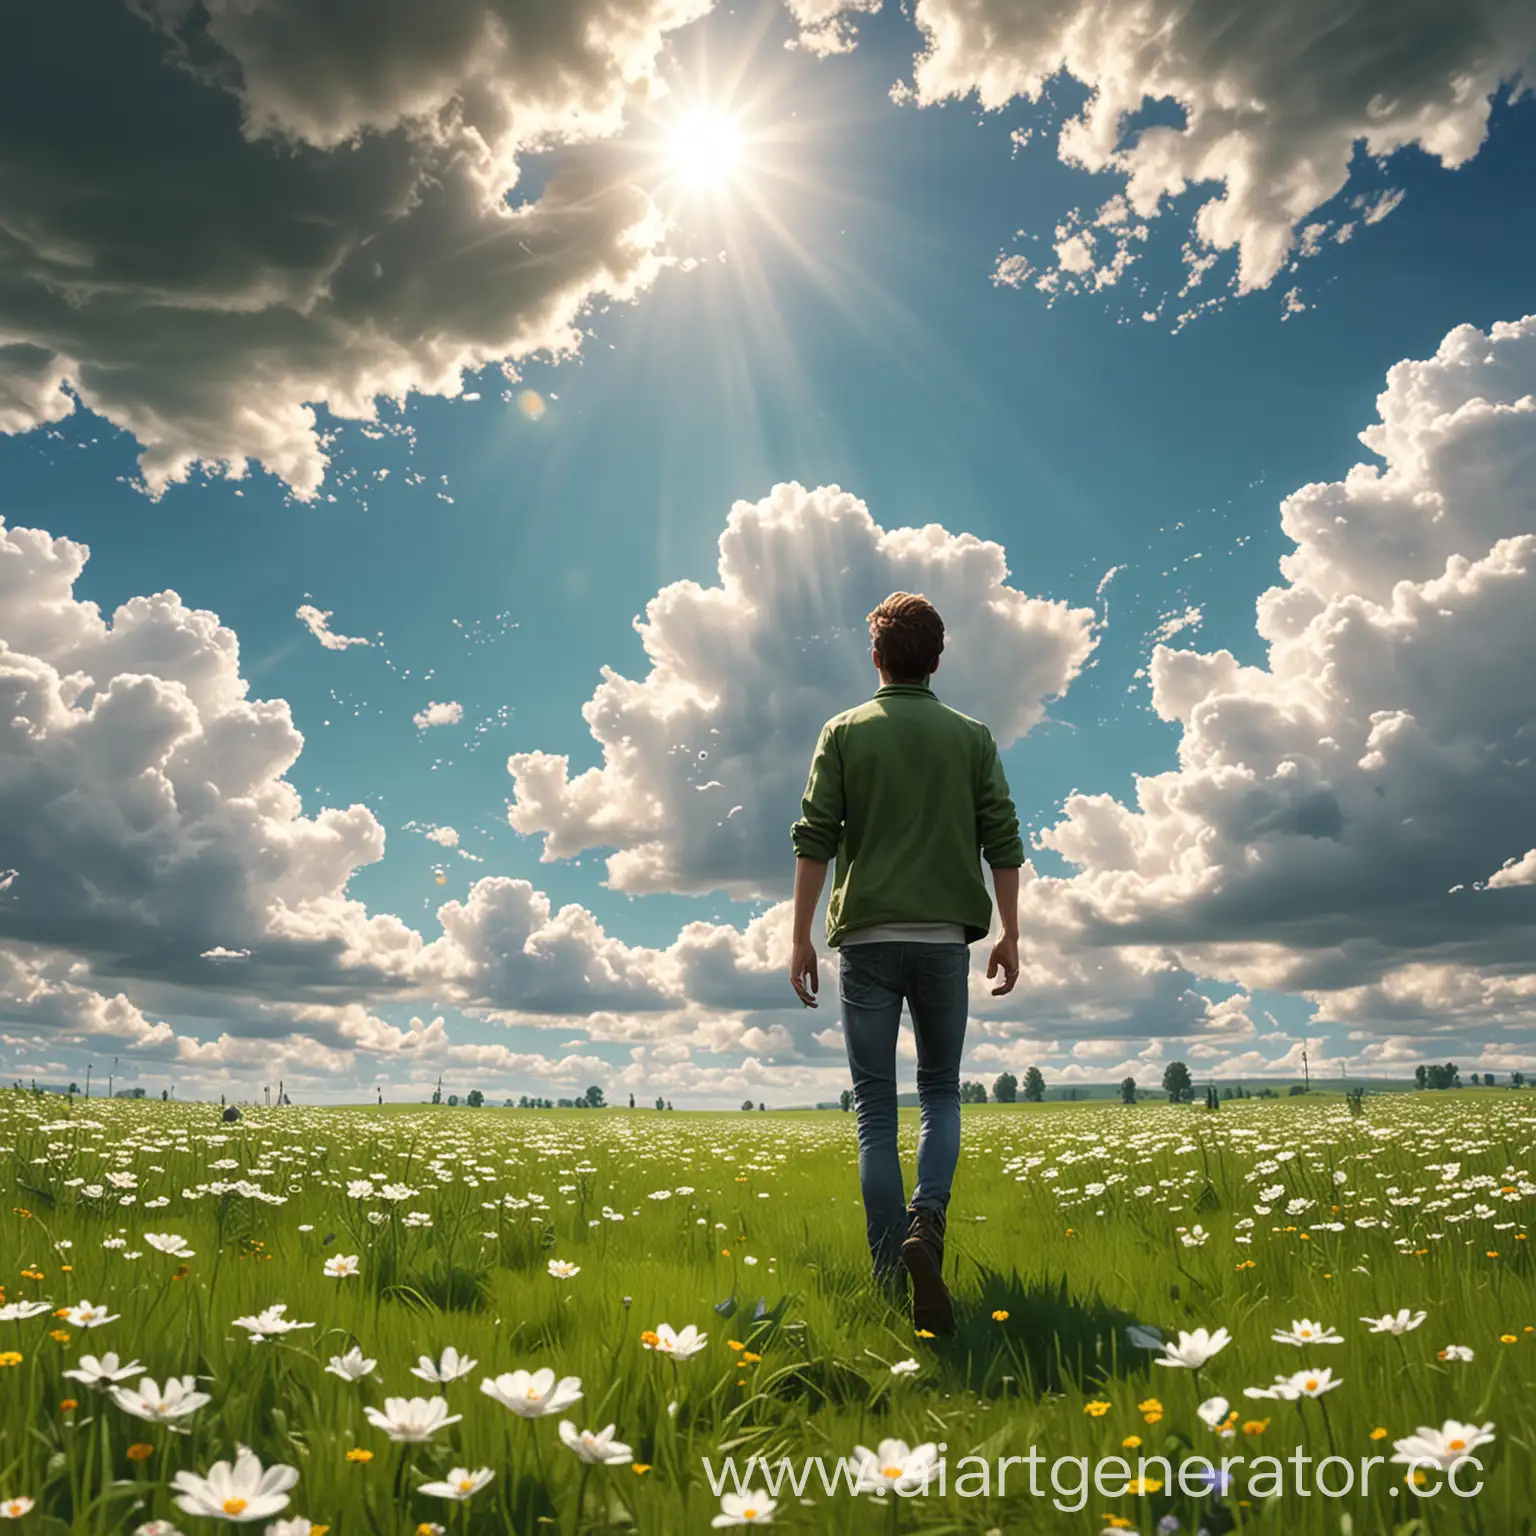  парень стоит весной на зеленом поле, где растут цветы, парень виден со спины, ярко светит солнце, а по небу плывут белые облака, реалистичный, детализированный